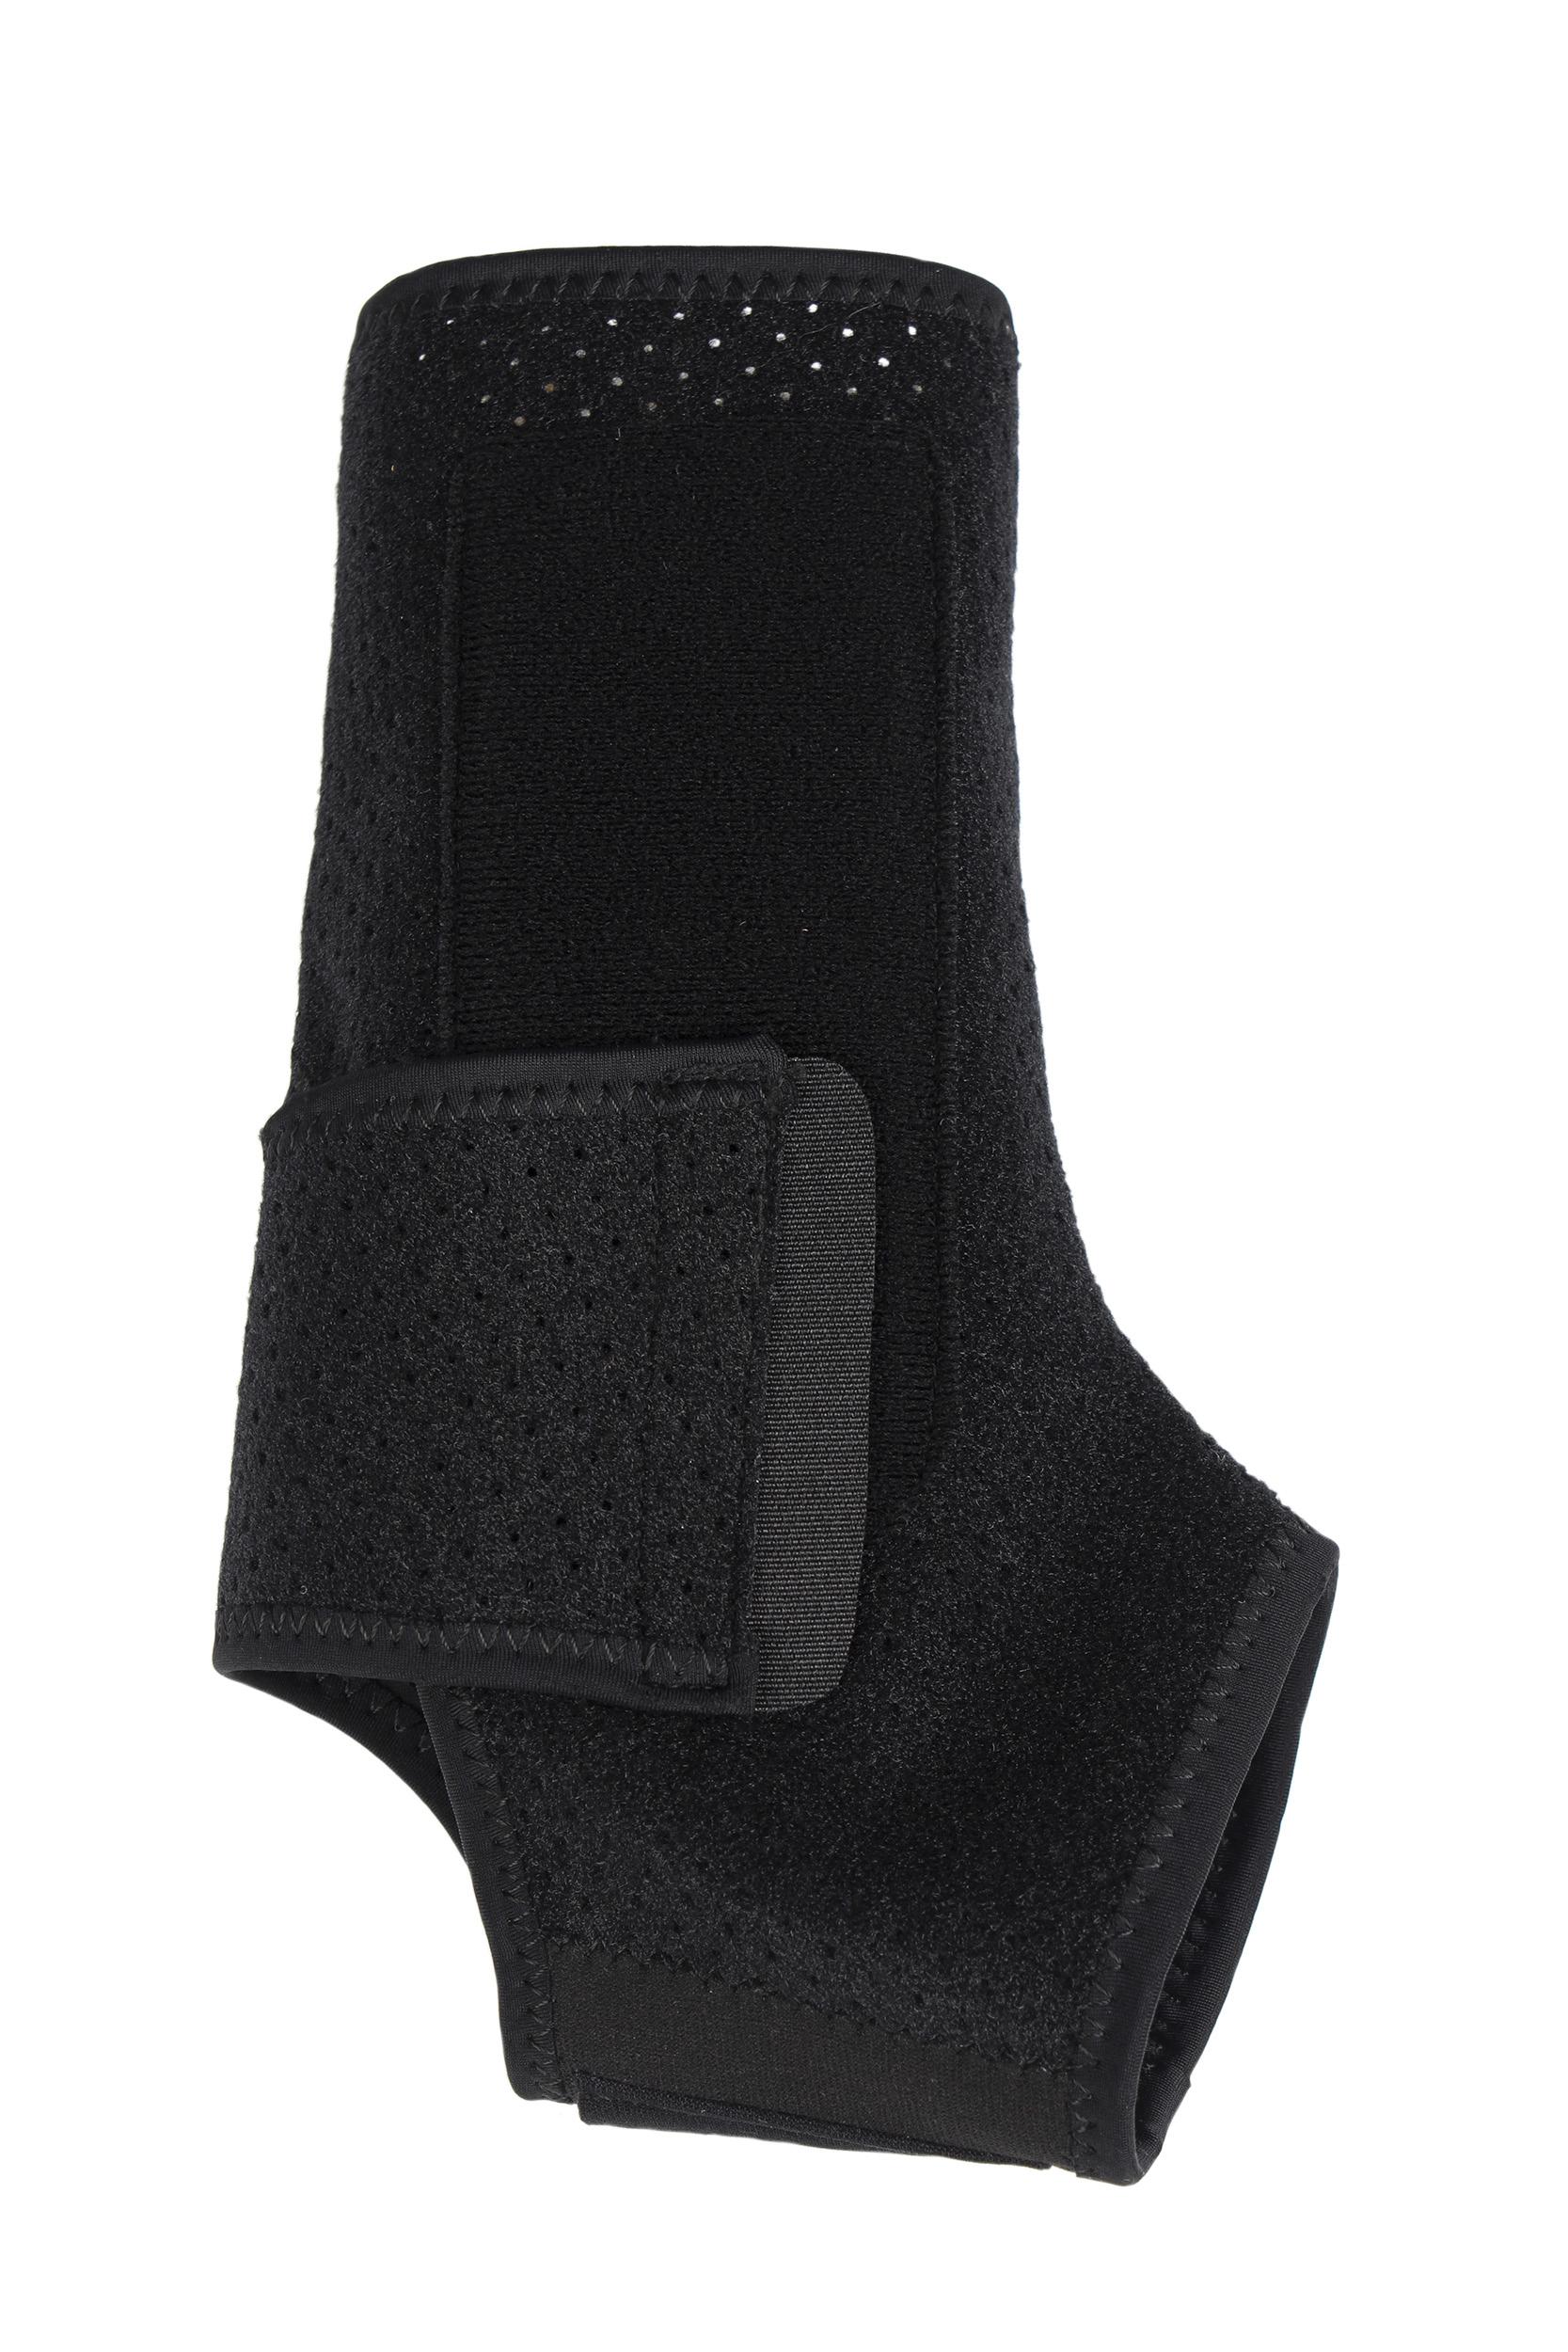 Vital Comfort Aktiv-Knöchelbandage mit Klettverschluss, Universalgröße „Flexitek“. Schwarz